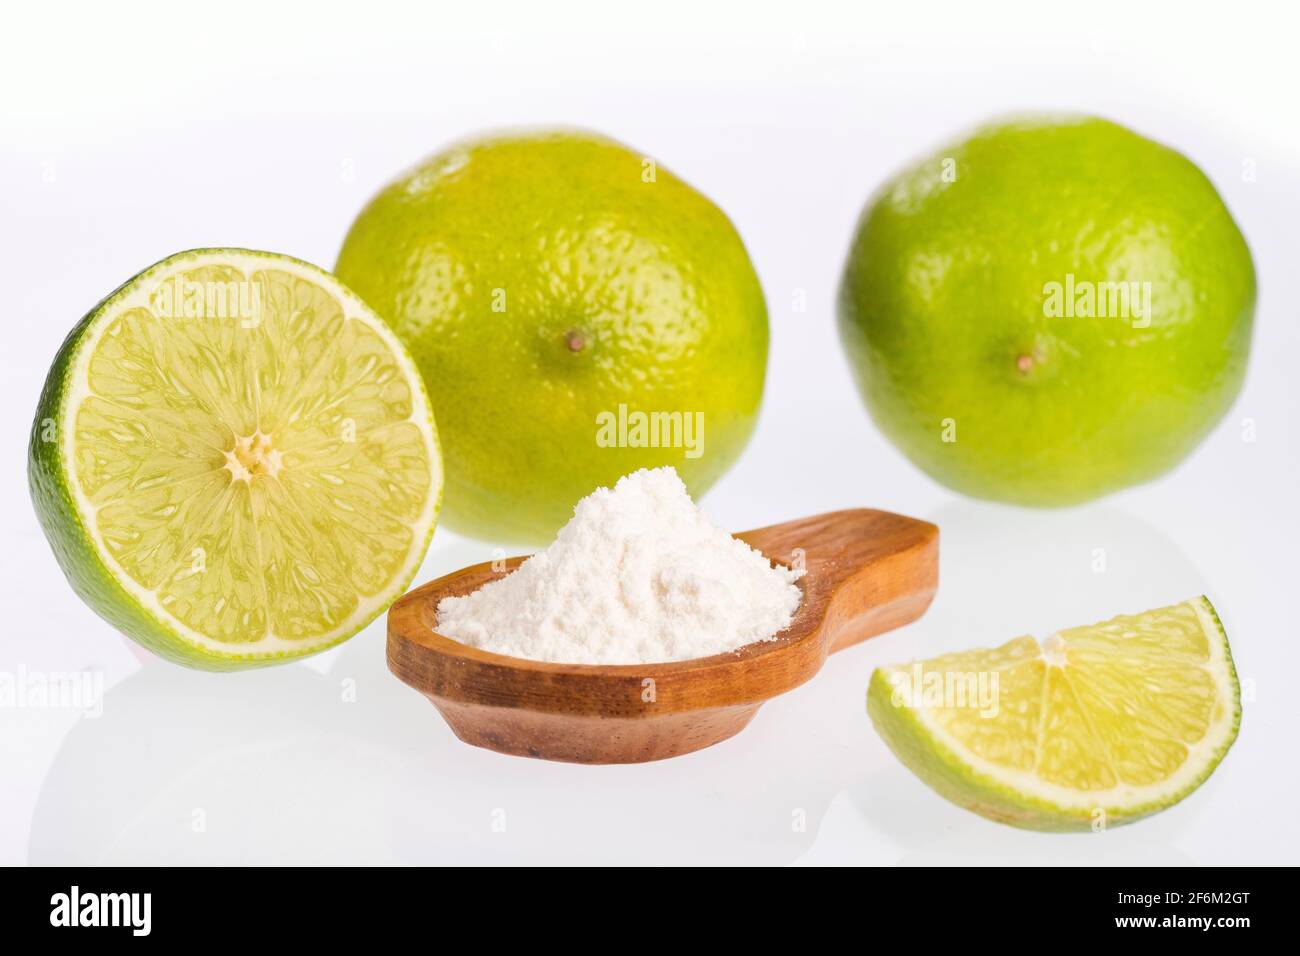 Die Zitrone mit Backpulver gemischt ist ein einfaches Heilmittel, das große Vorteile für den Körper bringt. Stockfoto